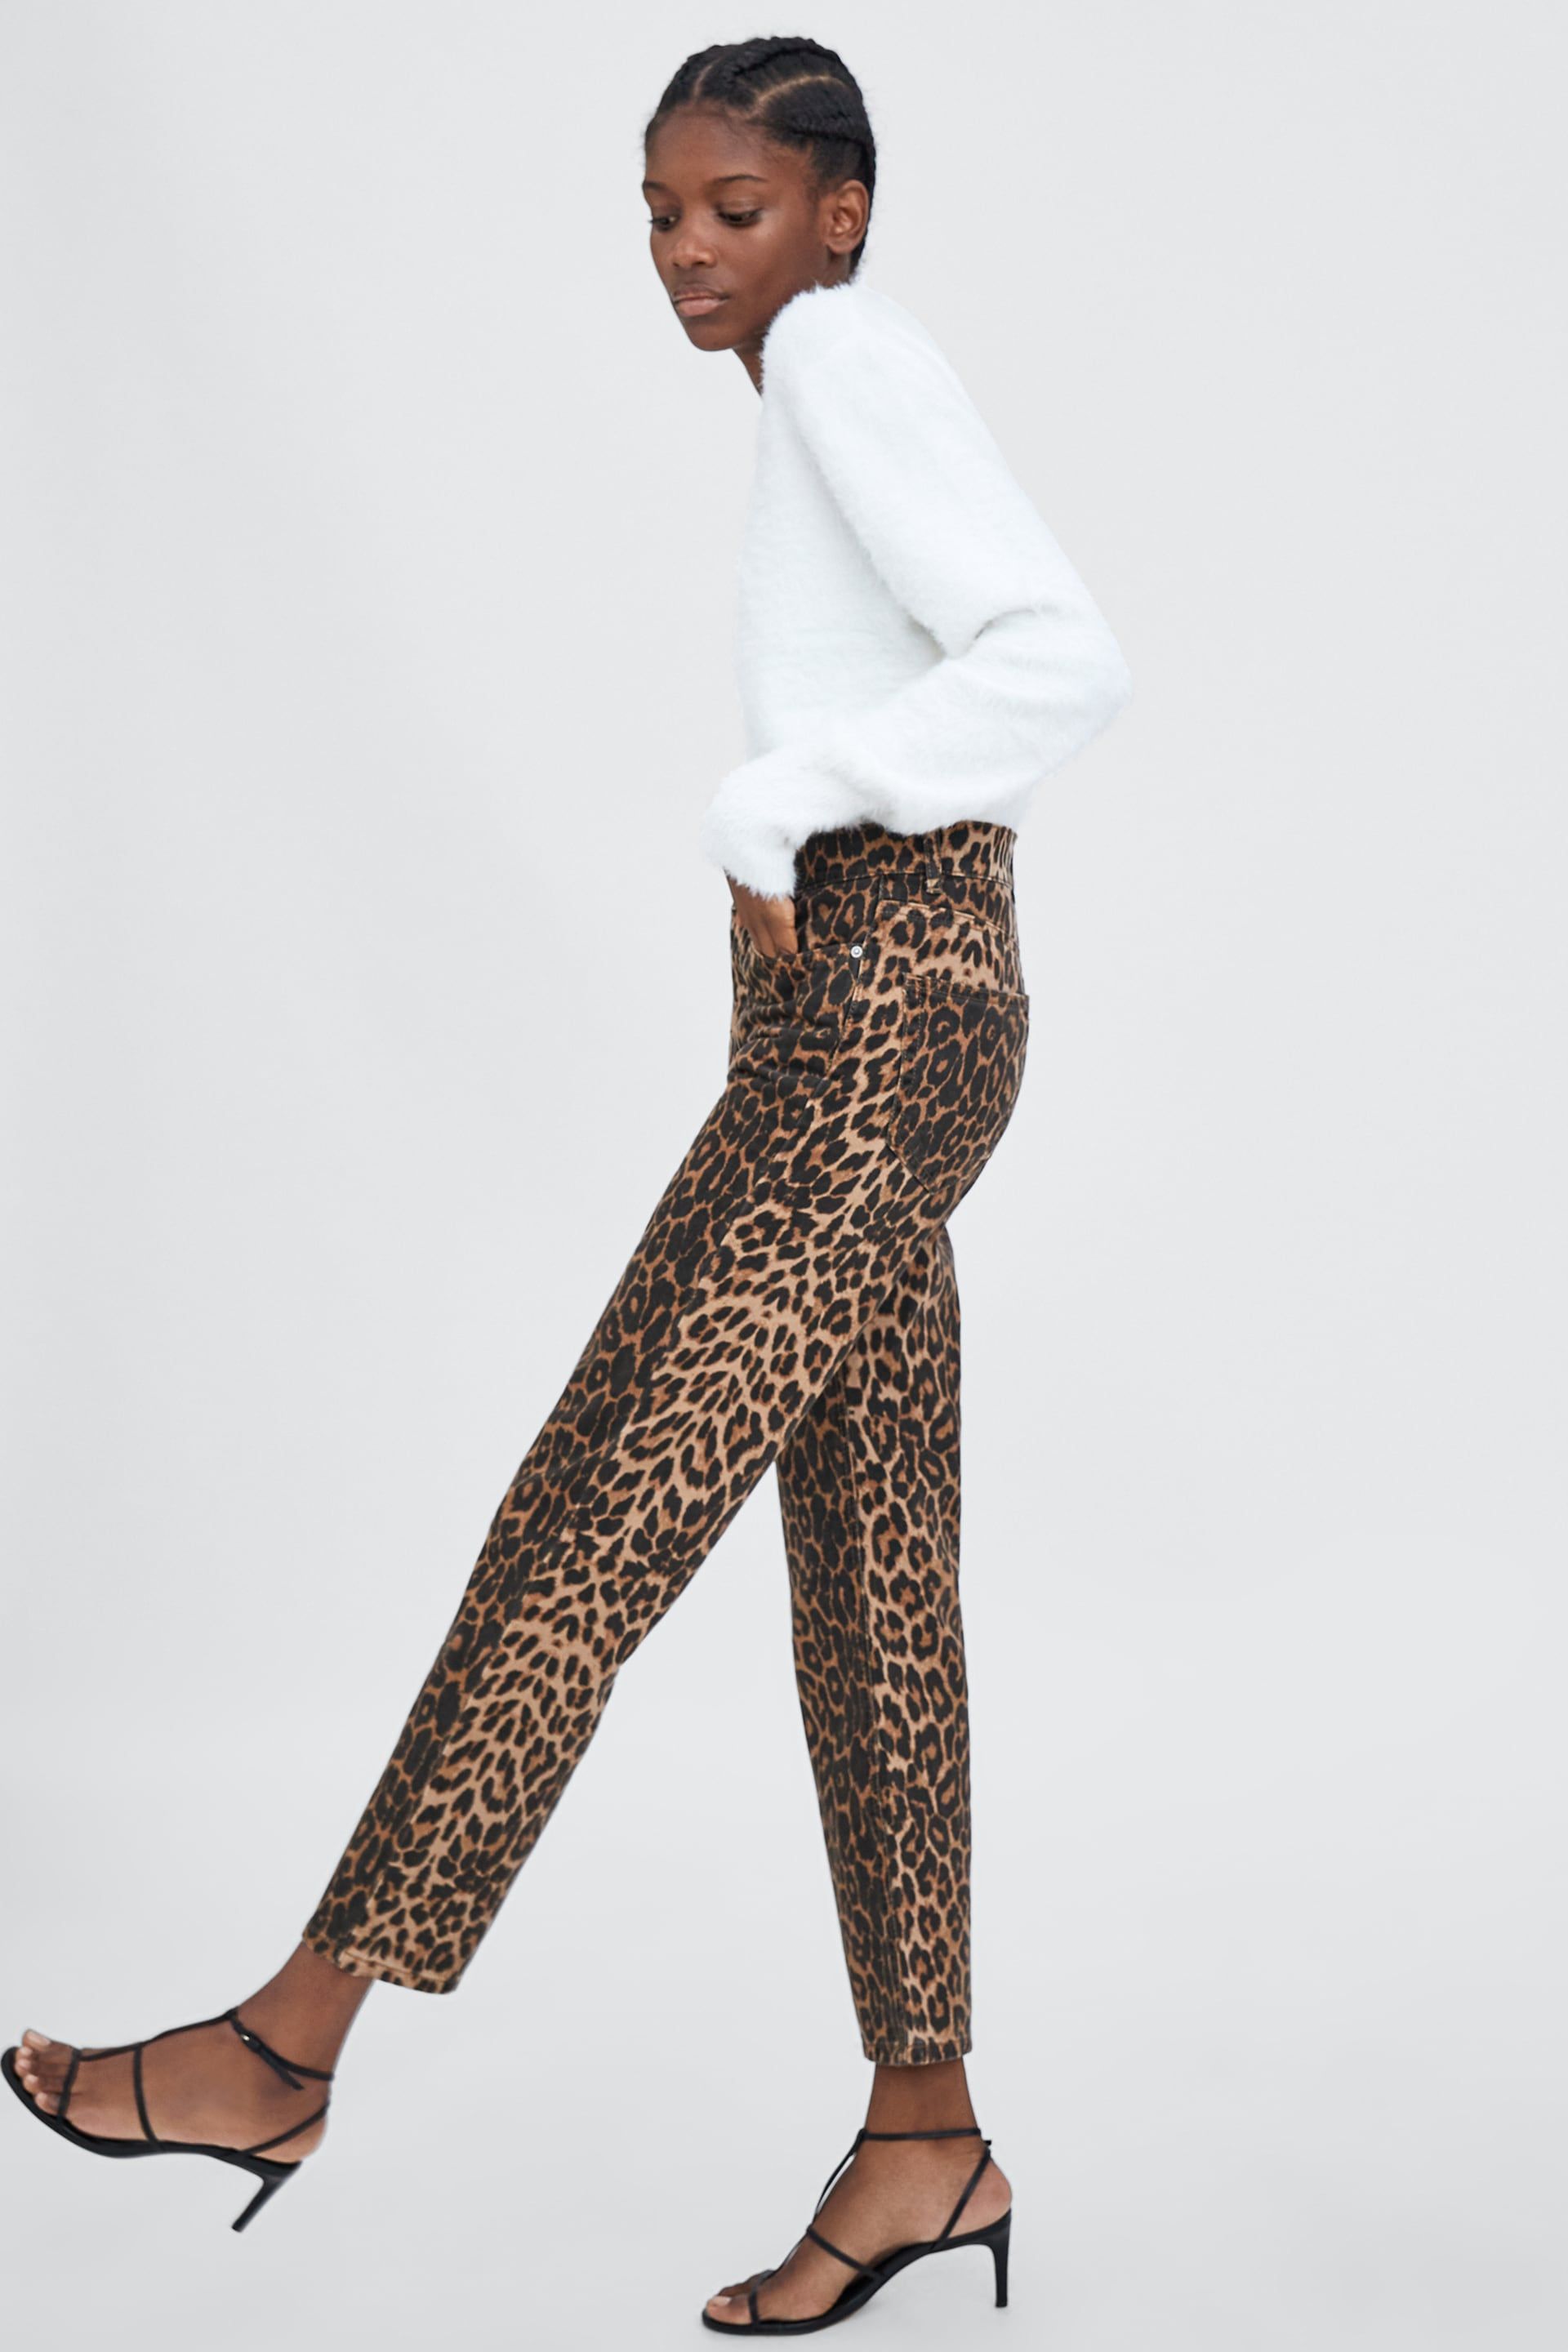 Pantalones leopardo Zara - Estos pantalones son los más de Zara